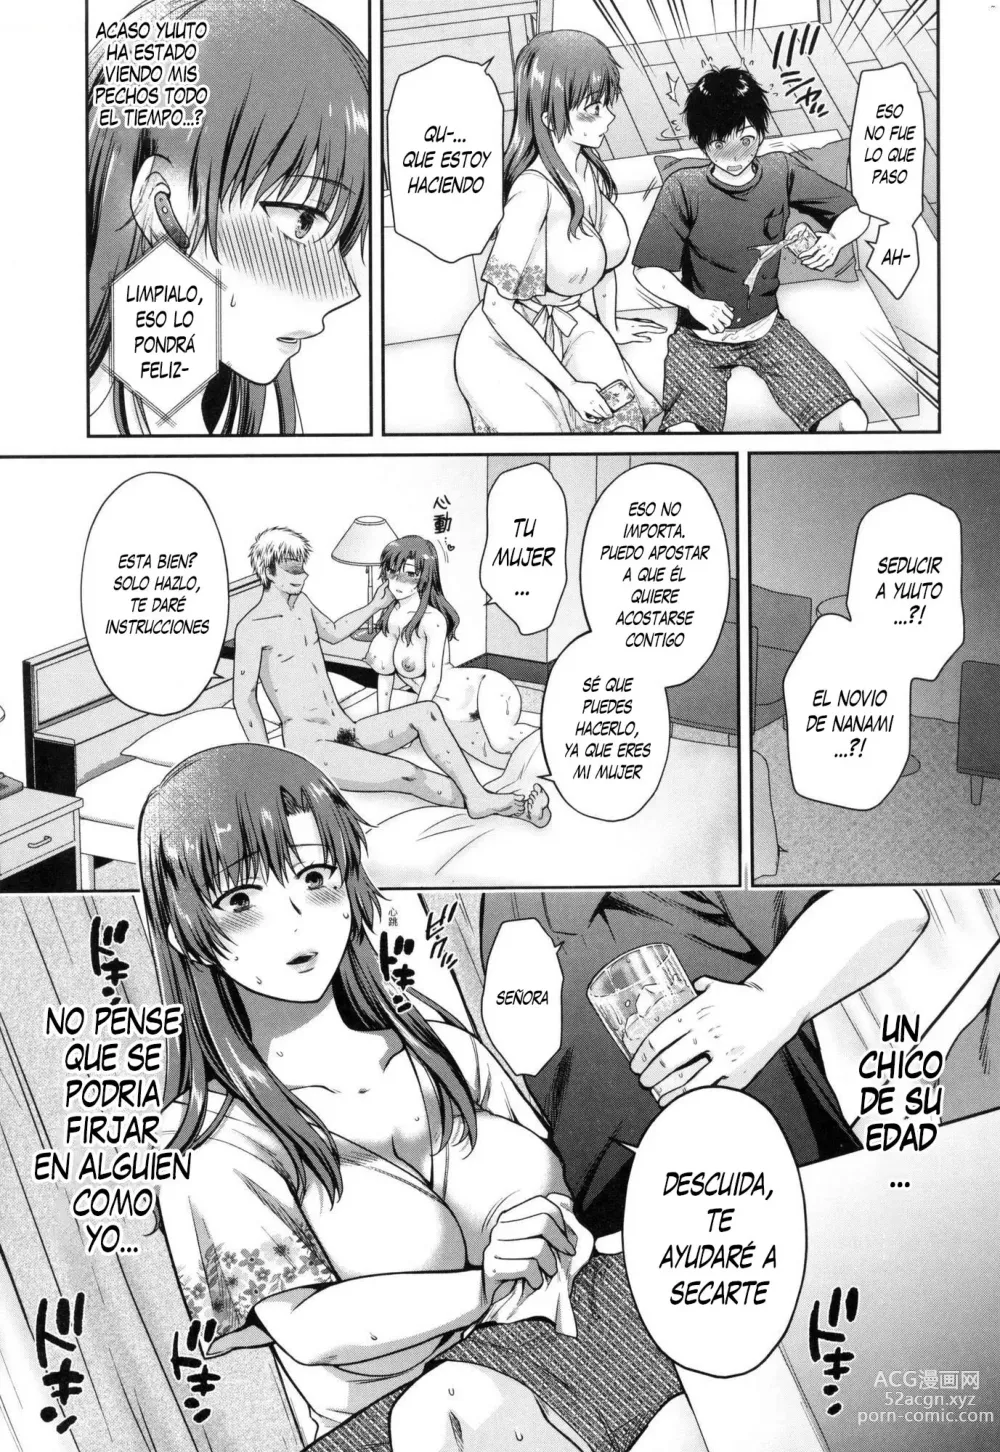 Page 4 of manga Transformando Madre E Hija Parte 4 (decensored)